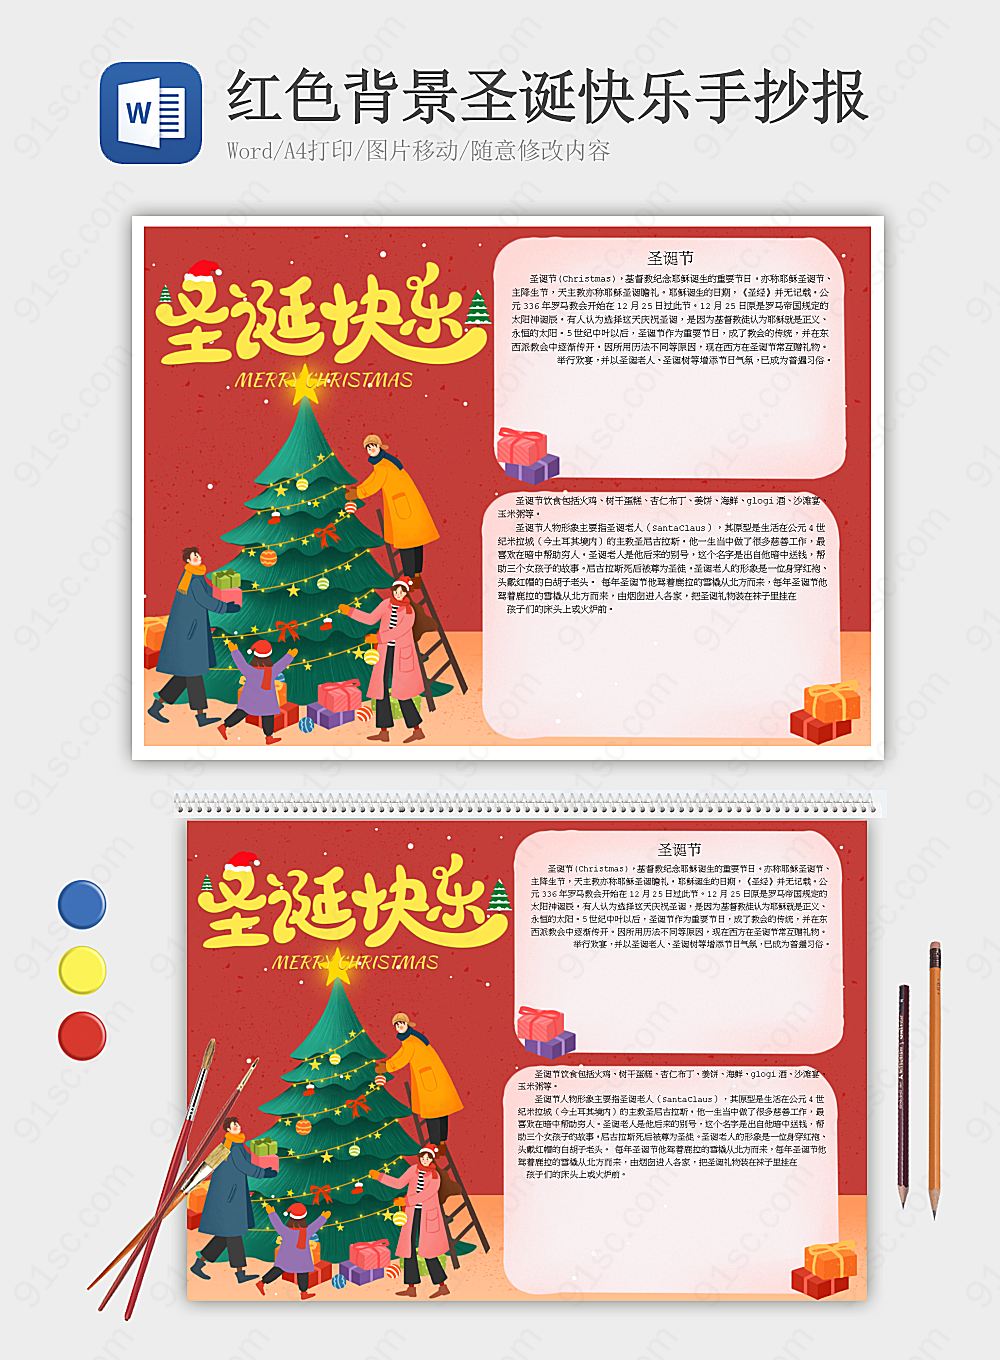 红色背景的Merry Christmas手抄报节日手抄报小报海报Word模板下载